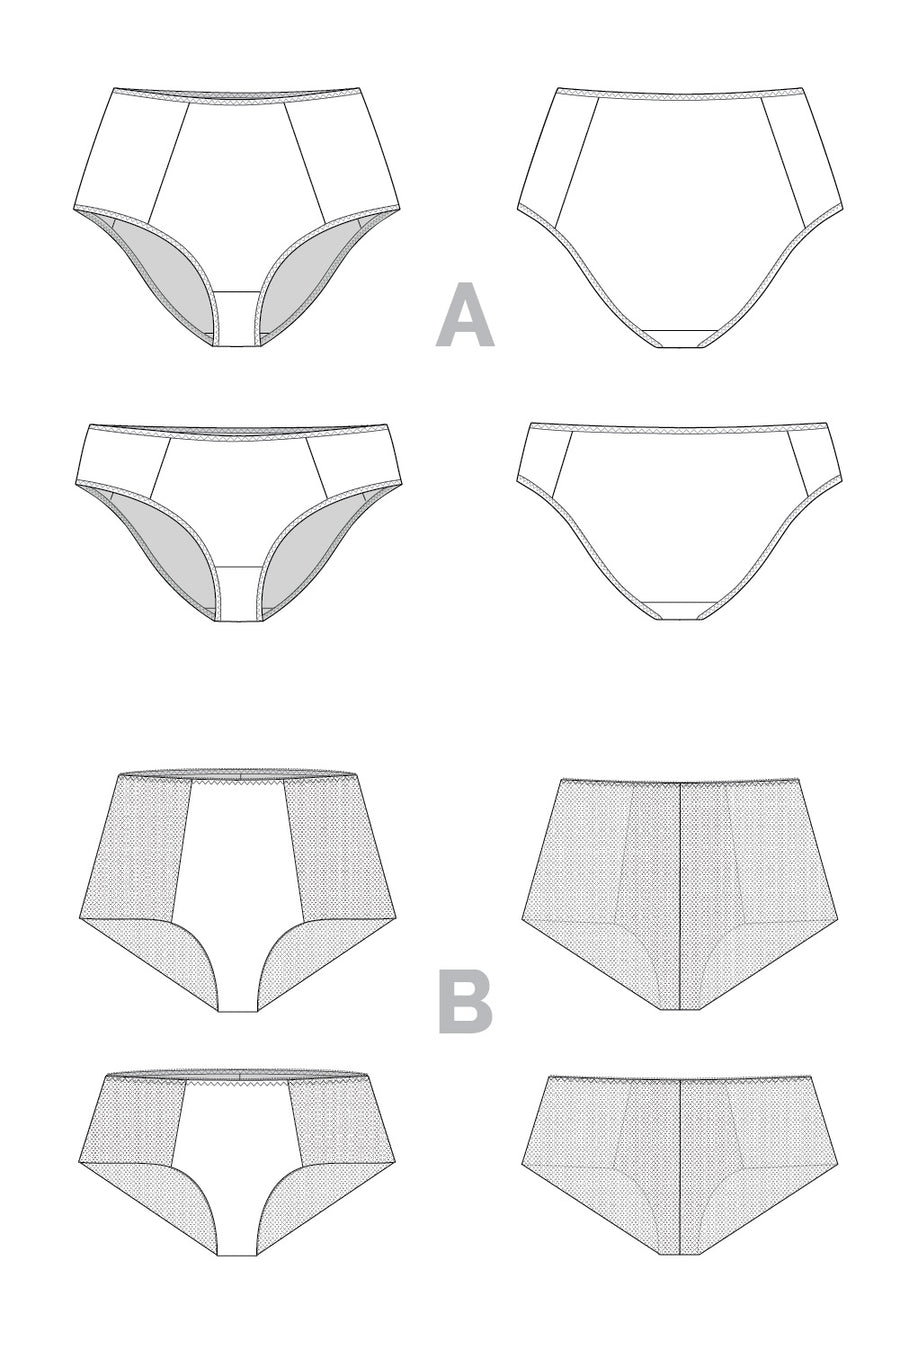 High Waist Panties Sewing Pattern, Sizes UK 6-24